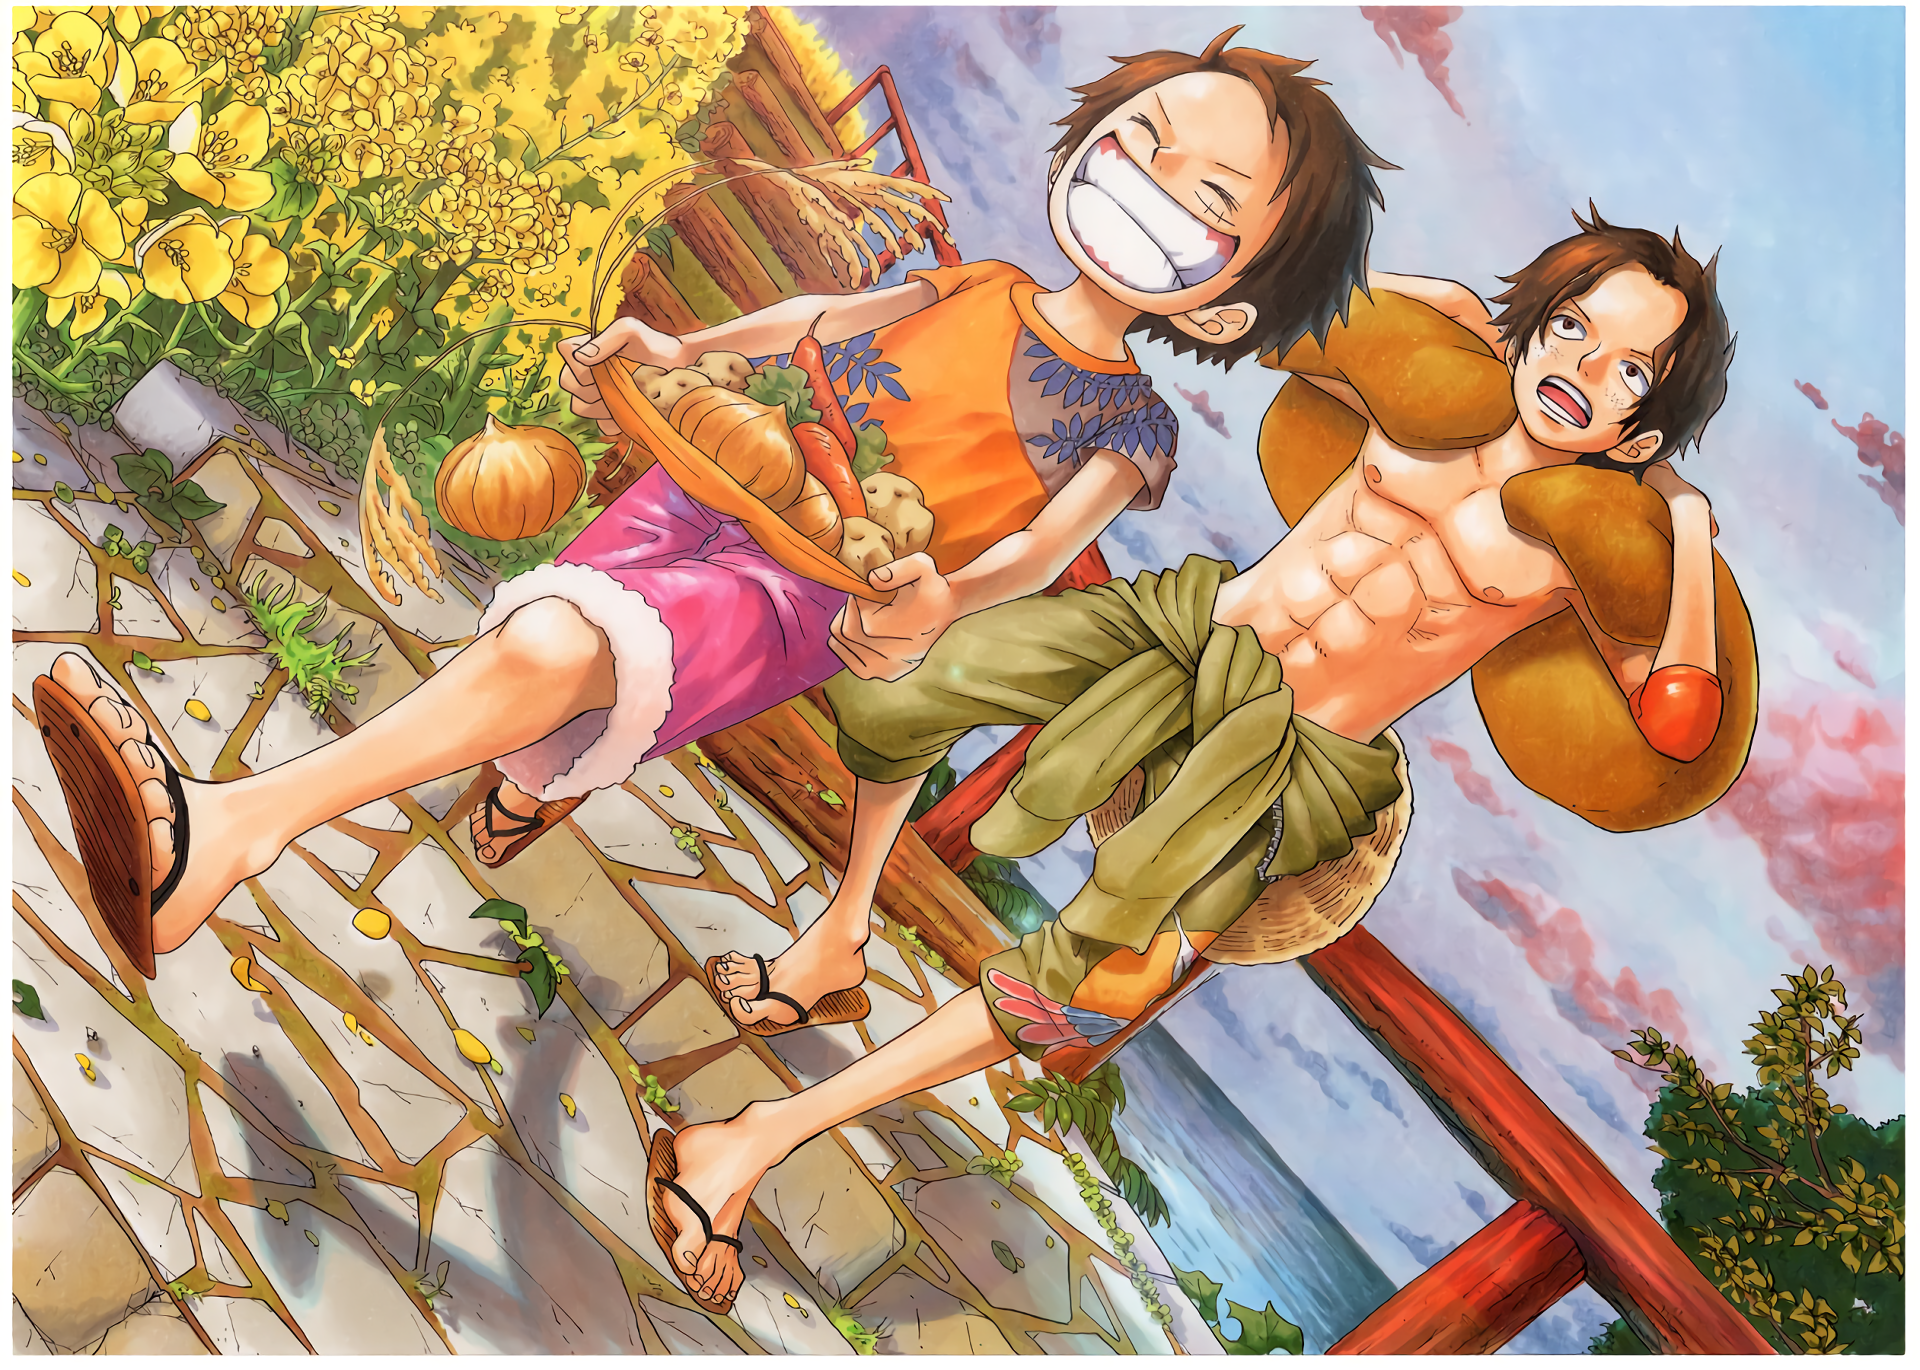 Anime One Piece HD Wallpaper là những hình nền cực kỳ đẹp mắt về bộ phim hoạt hình One Piece. Hãy tải ảnh này về và trang trí cho màn hình điện thoại của bạn để luôn cảm thấy đầy cảm hứng và năng lượng.